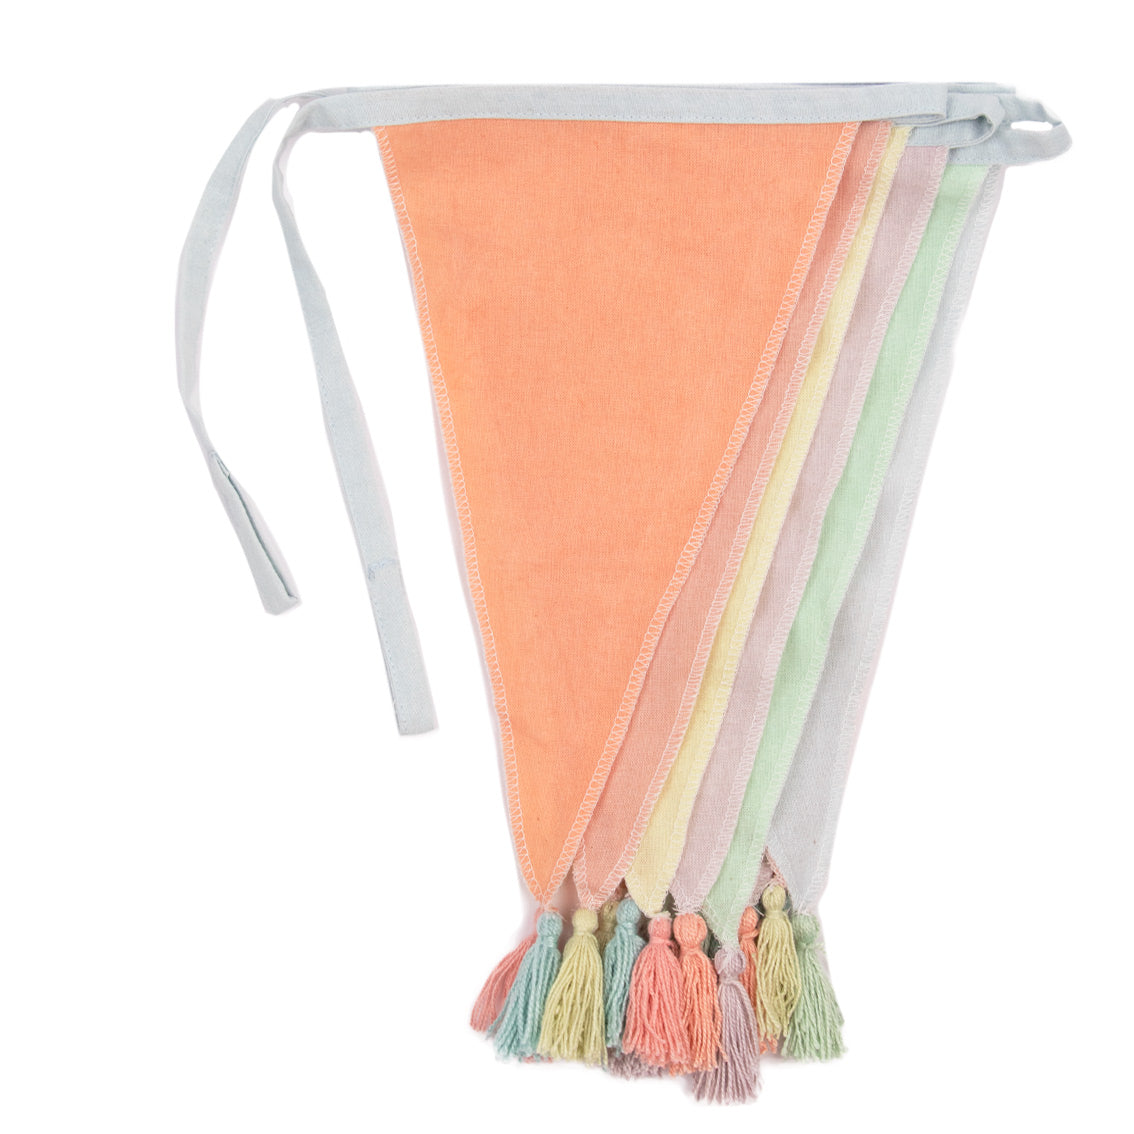 Guirnalda de banderines de tela en colores pastel